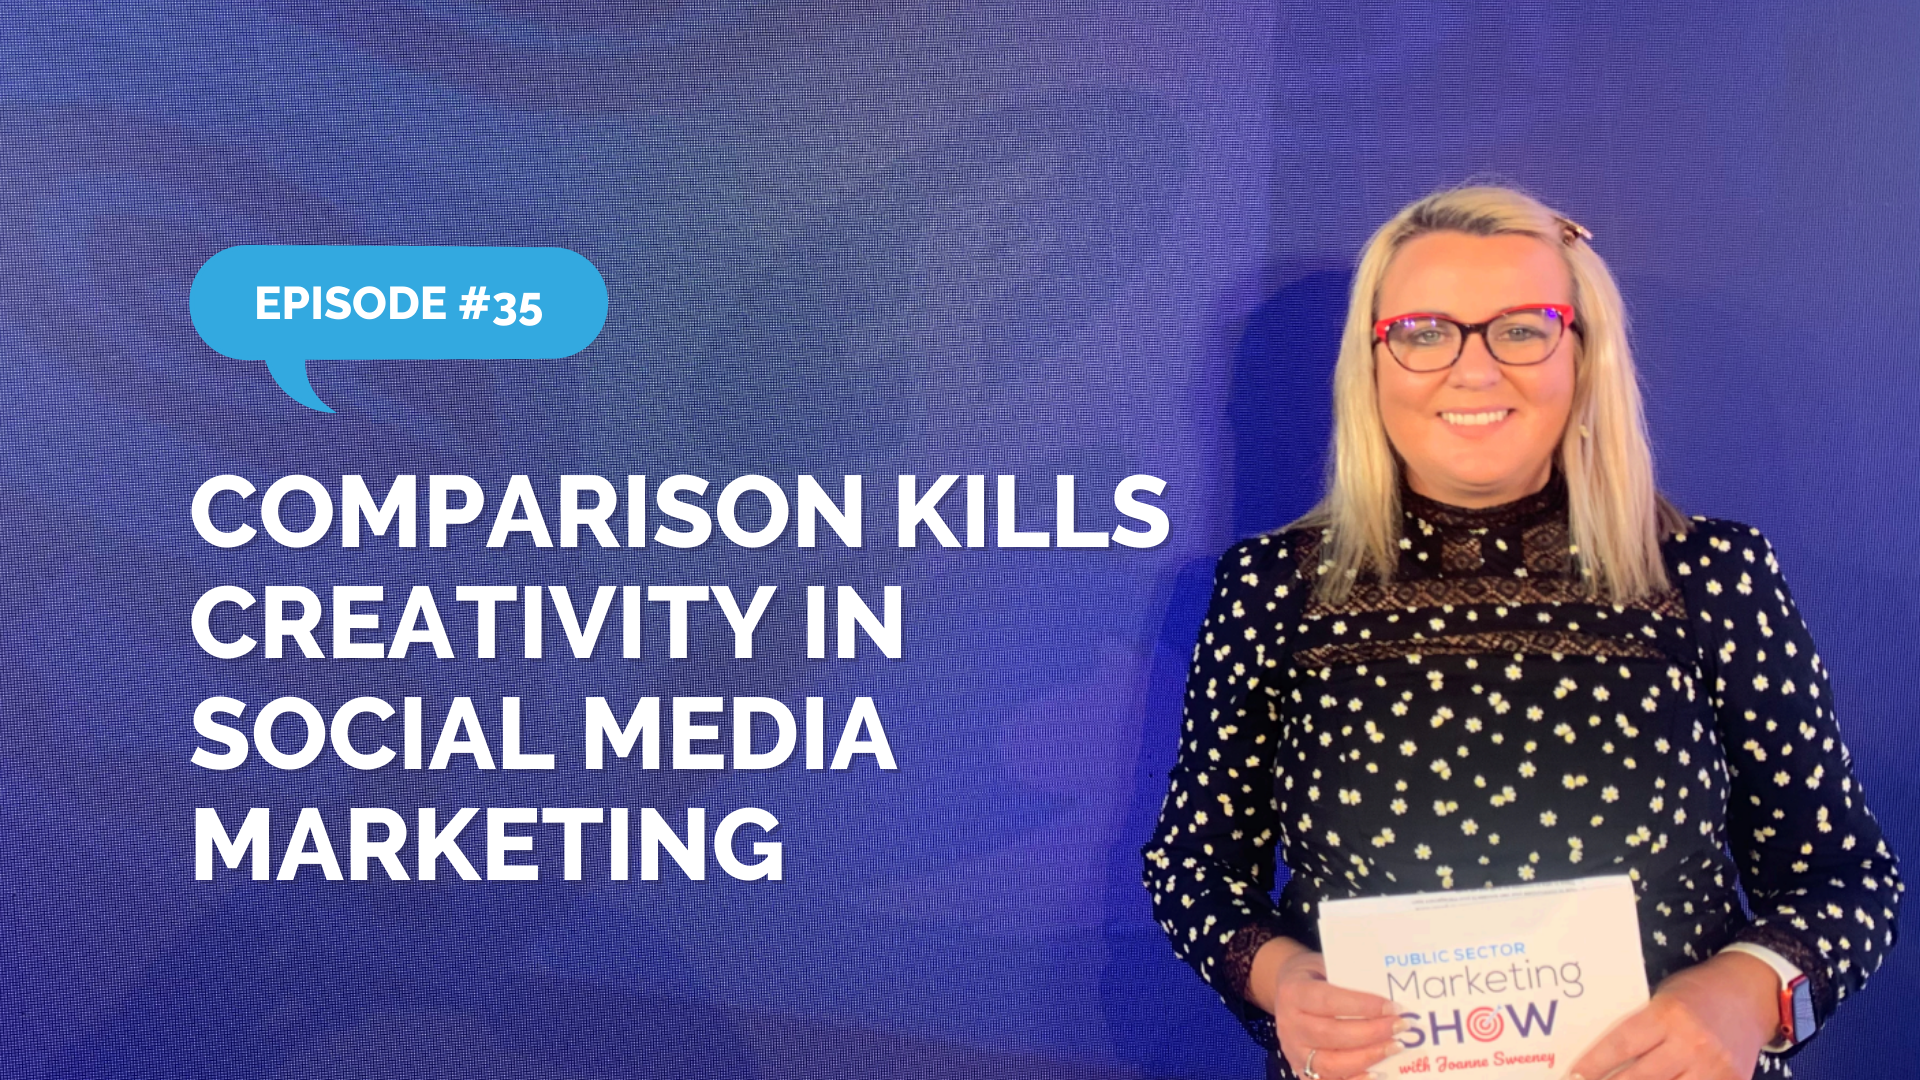 Episode 35 - Comparison Kills Creativity in Social Media Marketing